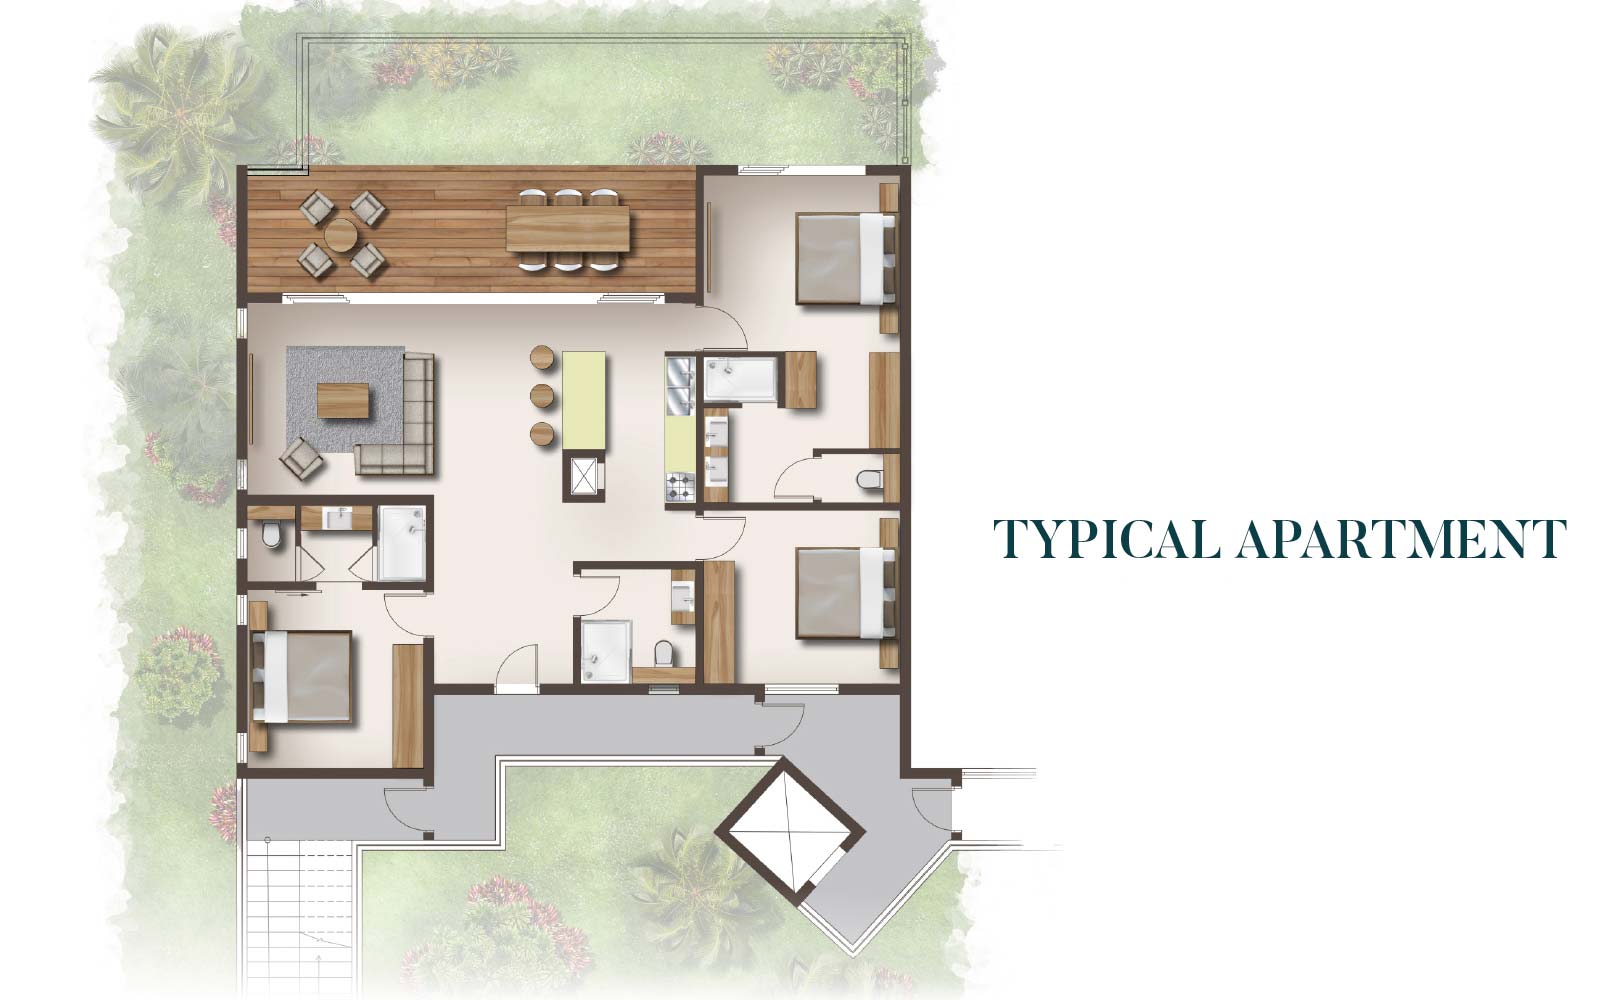 Casa-Alegria-apartment-Floor-Plan-April-23-2020